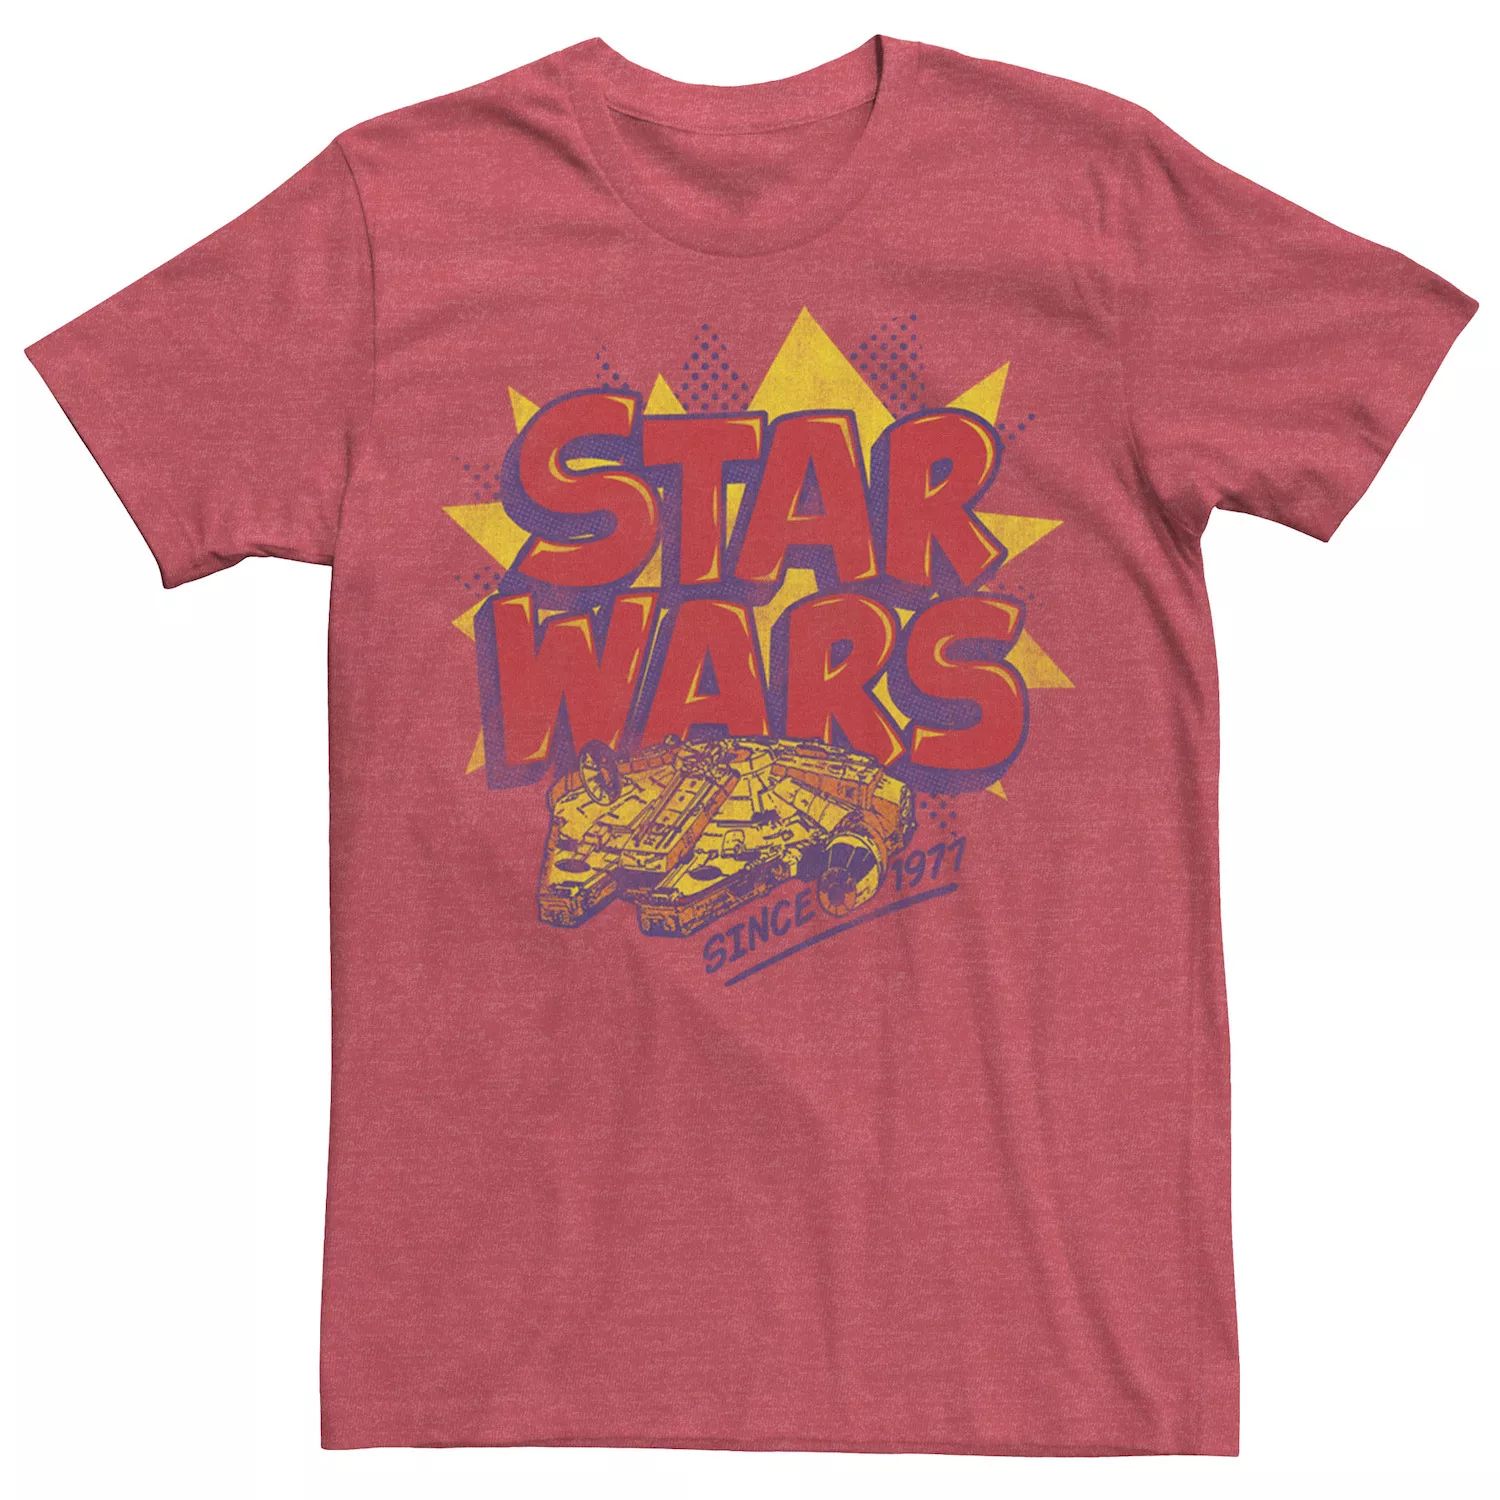 Мужская футболка с логотипом комиксов «Звездные войны: Сокол тысячелетия» Star Wars мужская футболка с логотипом комиксов звездные войны сокол тысячелетия star wars